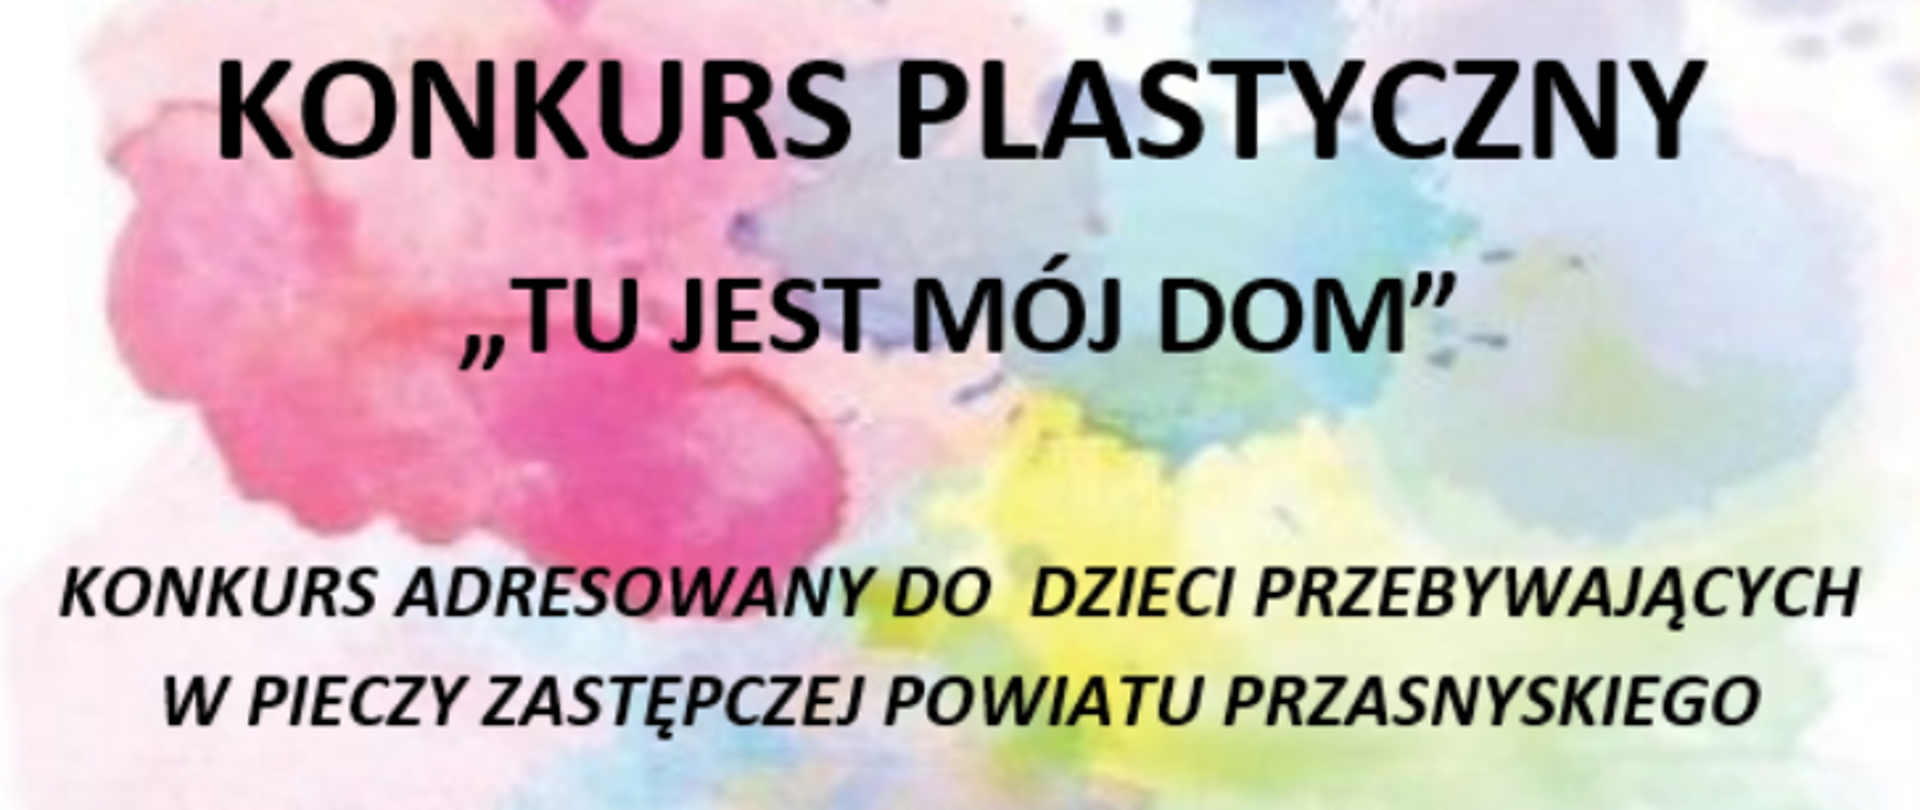 Grafika przedstawia informacje odnośnie konkursu plastycznego "Tu jest mój Dom" - adresowanego do dzieci przebywających w pieczy zastępczej Powiatu Przasnyskiego.